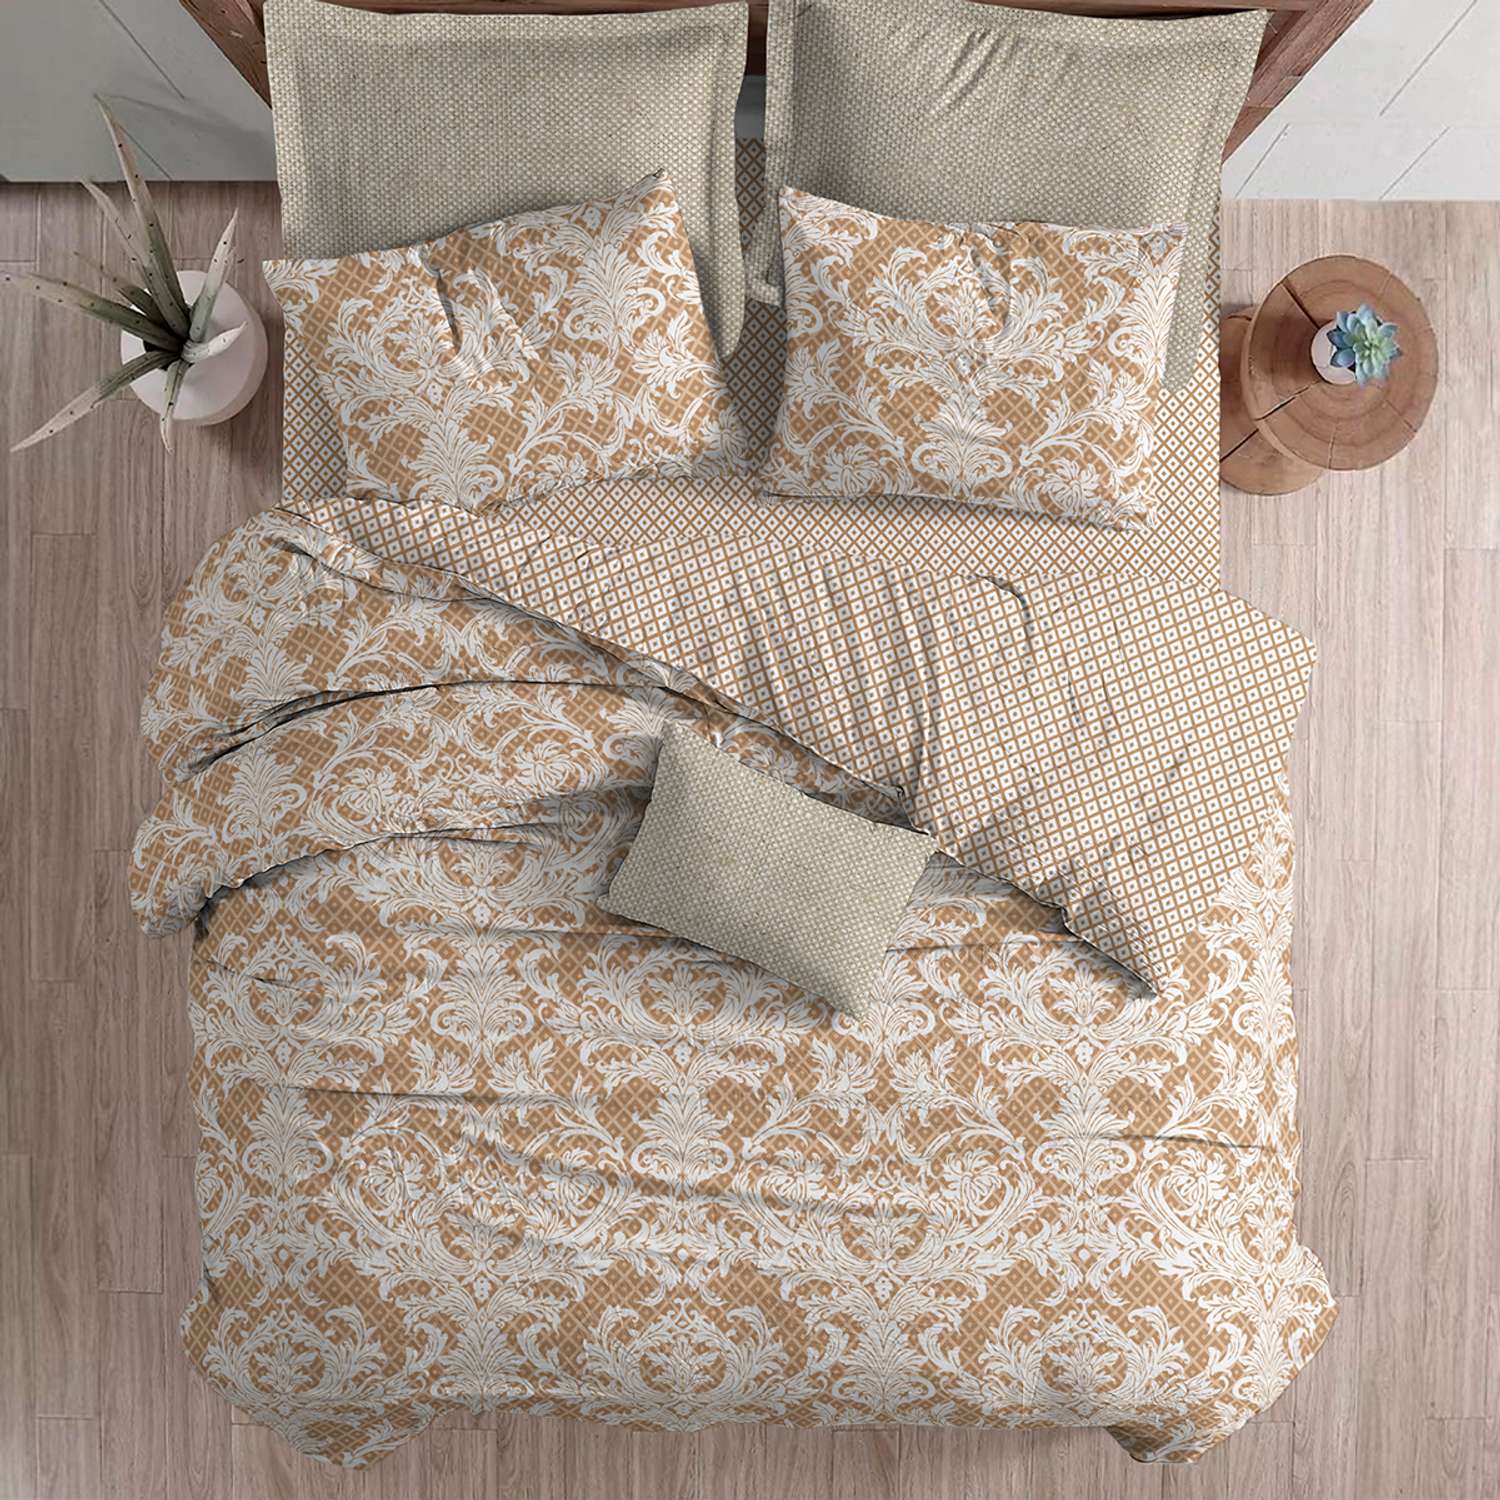 Комплект постельного белья lagom Бруа 2-спальный макси наволочки 70х70 - фото 9